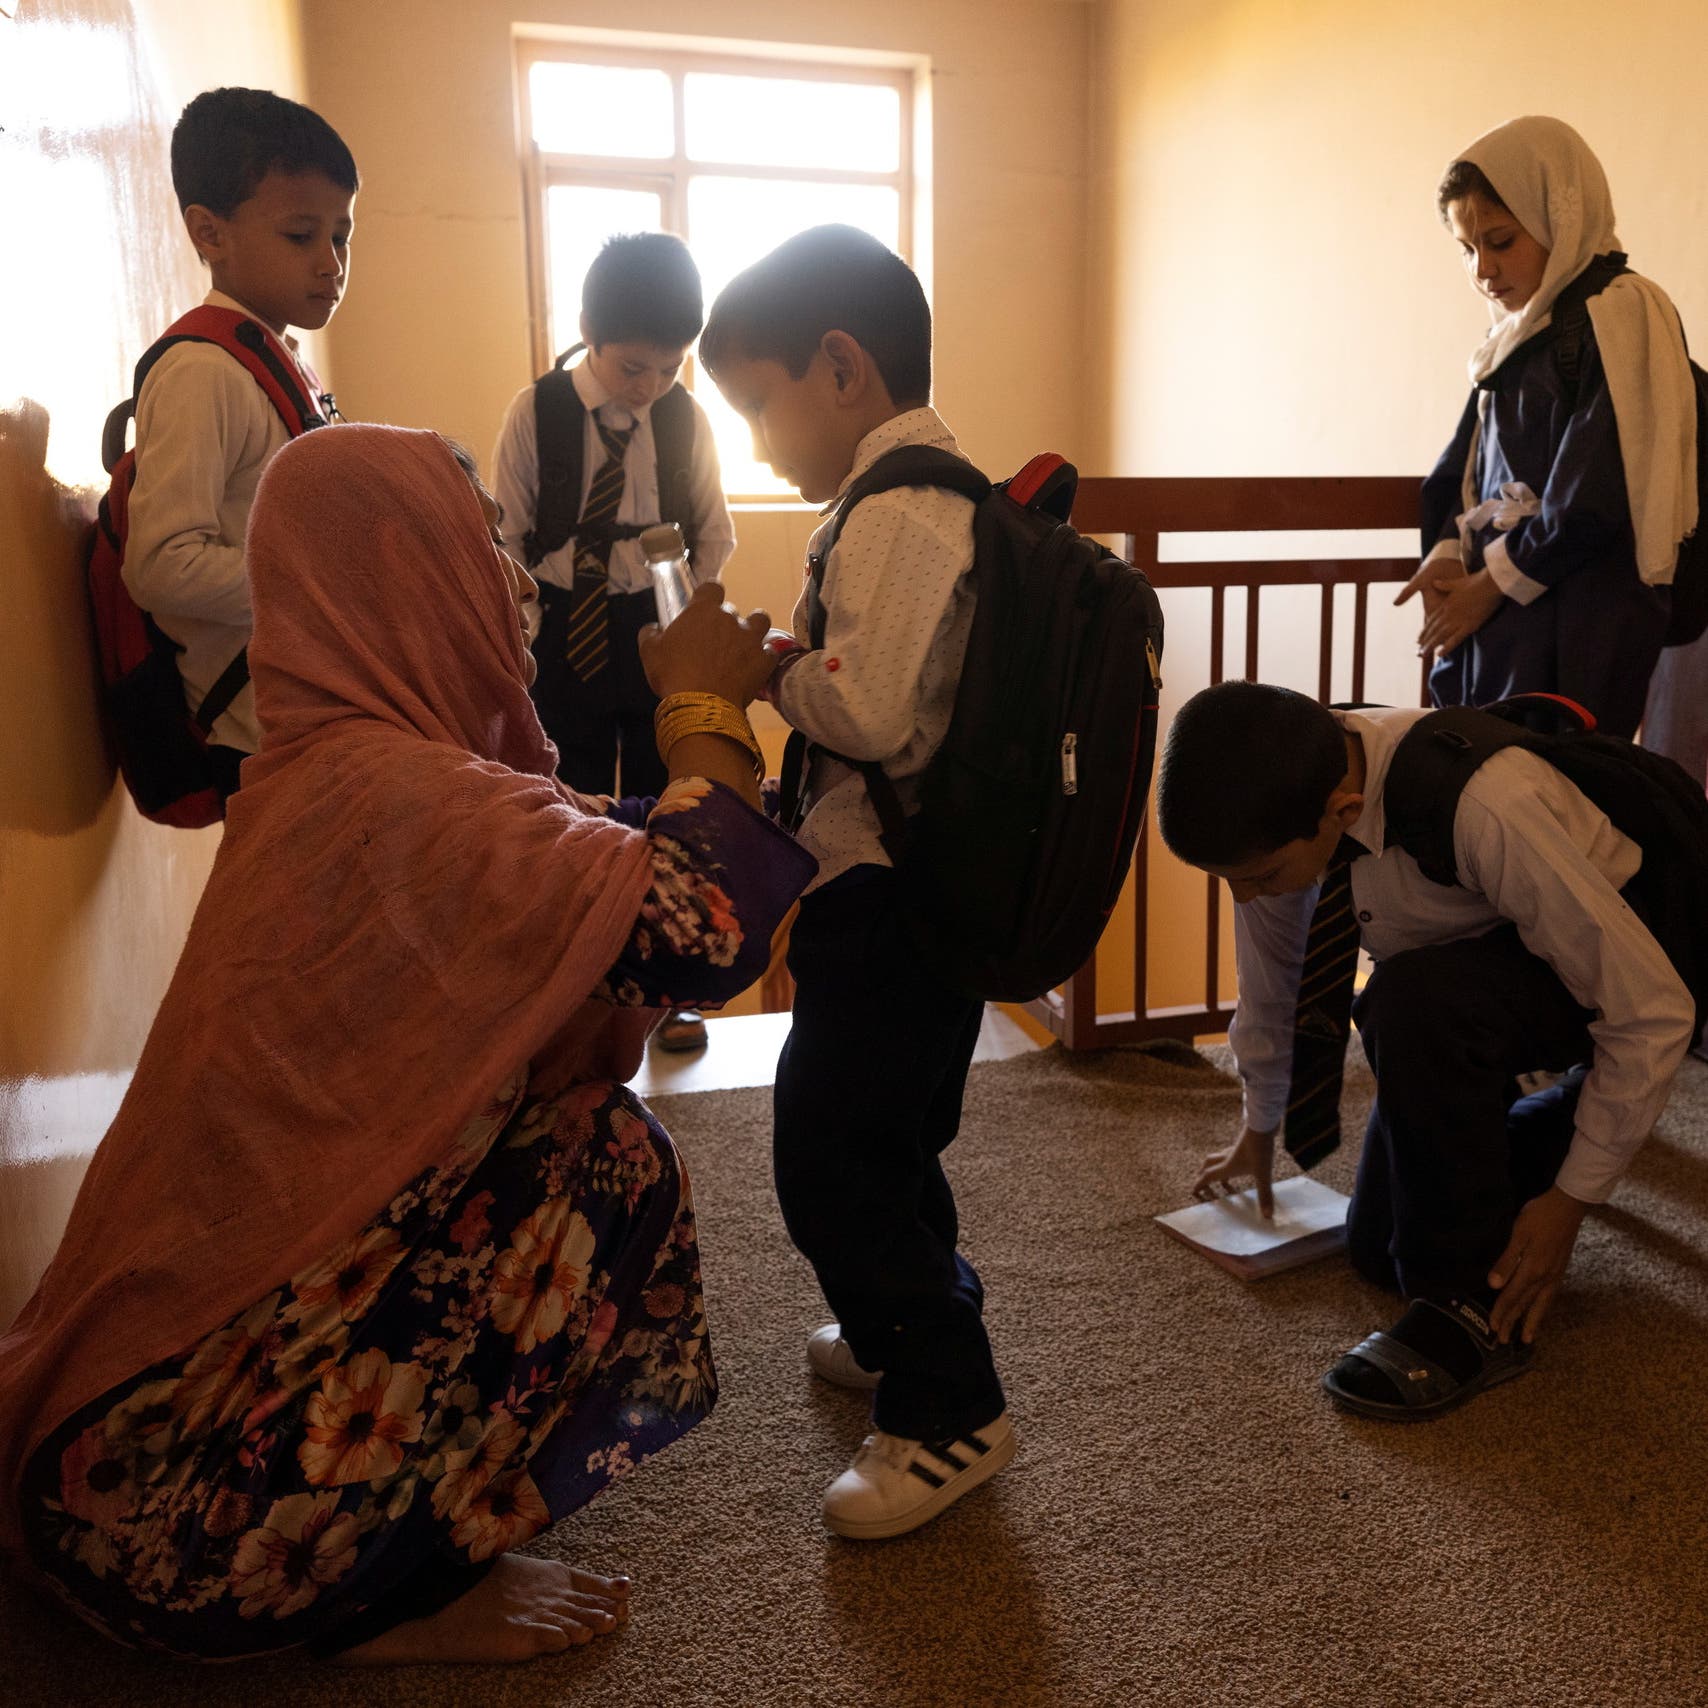 طالبان تكرر.. "قريباً جداً سنفتح المدارس للبنات"